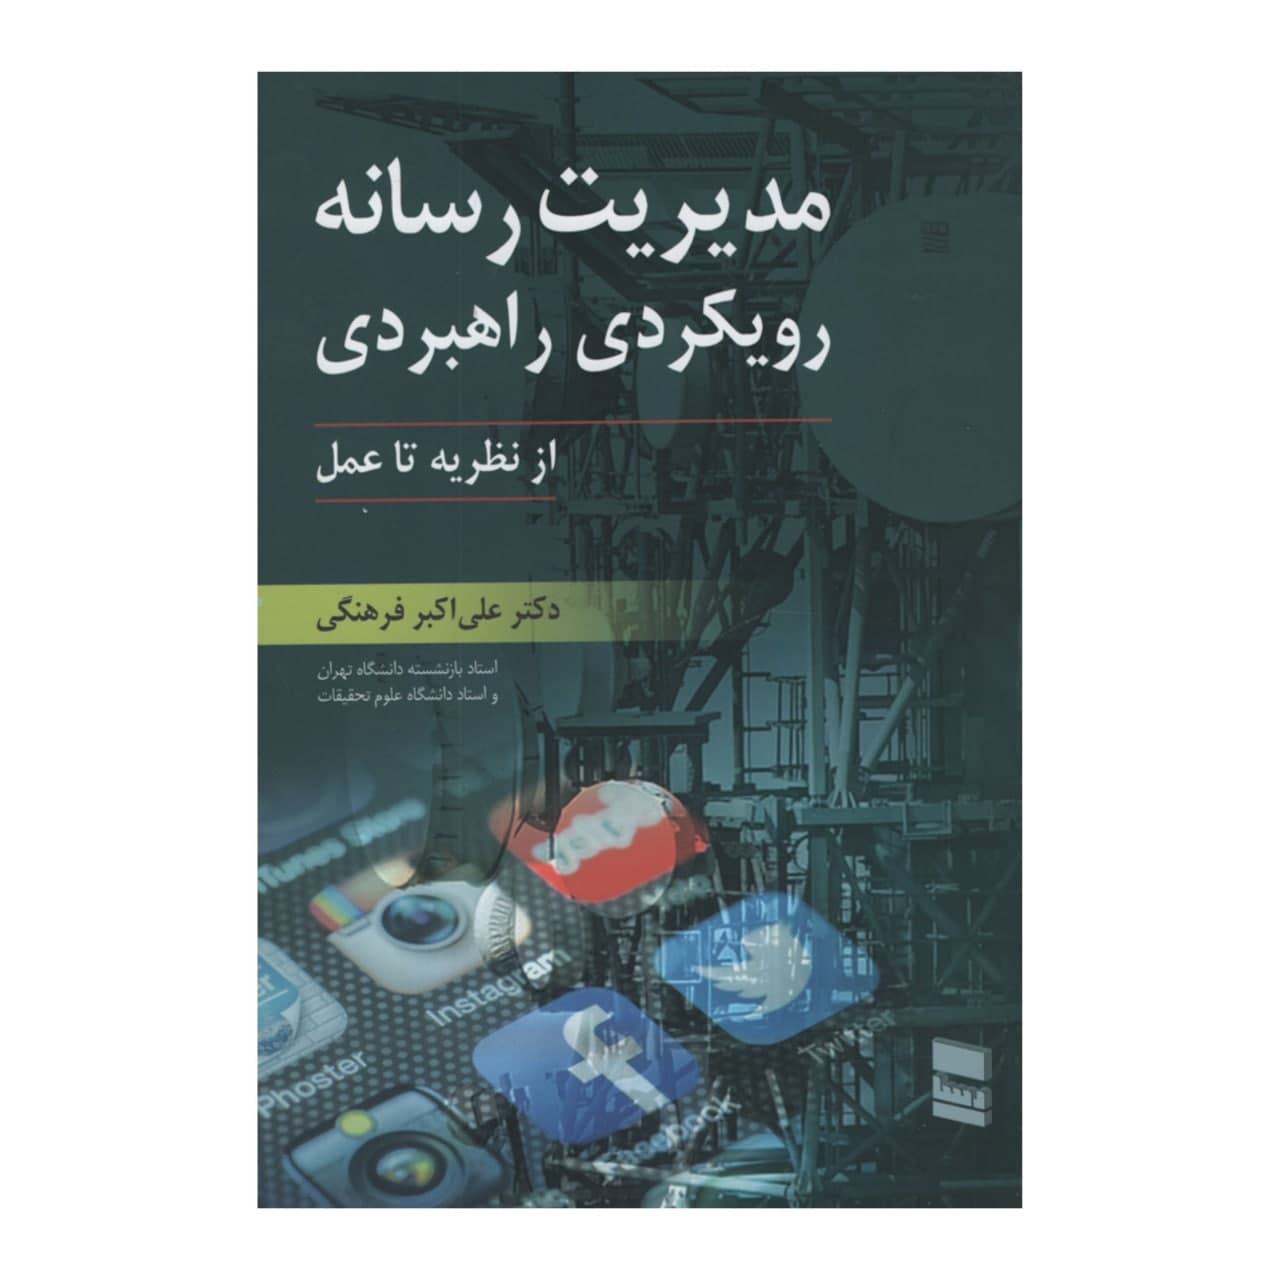 کتاب مدیریت رسانه رویکردی راهبردی اثر علی اکبر فرهنگی انتشارات رسا